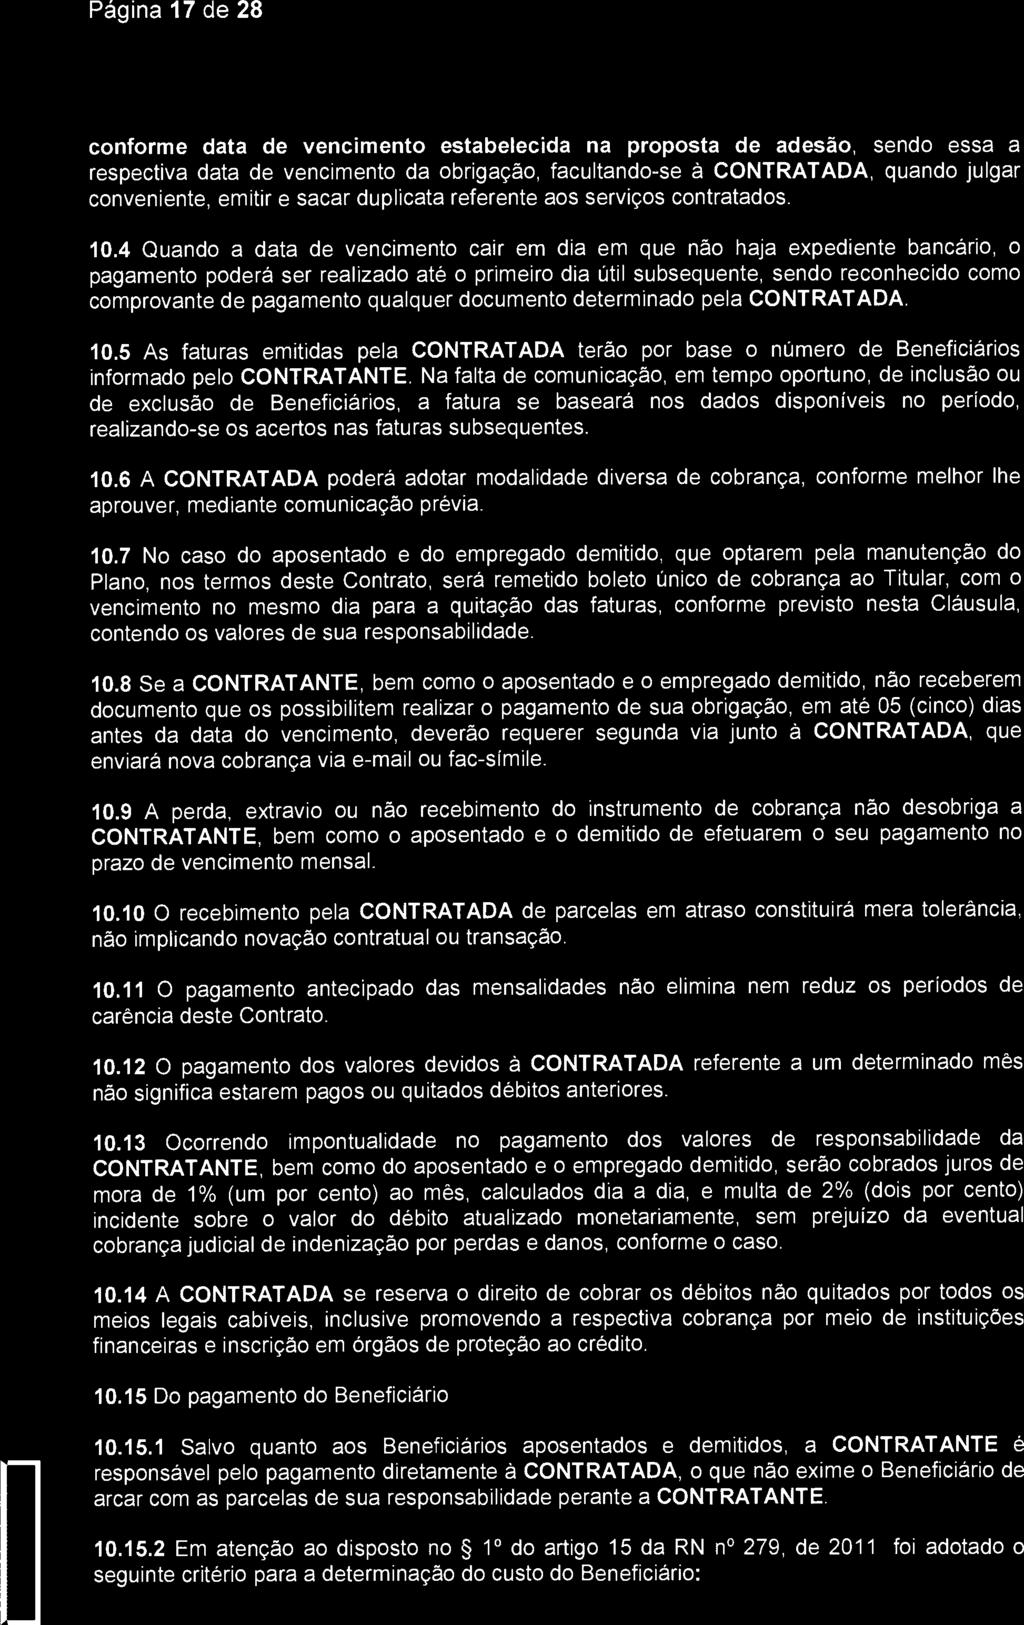 Página 17 de 28 SantaCaça) Saude Sao jose dos Campos conforme data de vencimento estabelecida na proposta de adesão, sendo essa a respectiva data de vencimento da obrigação, facultando-se à